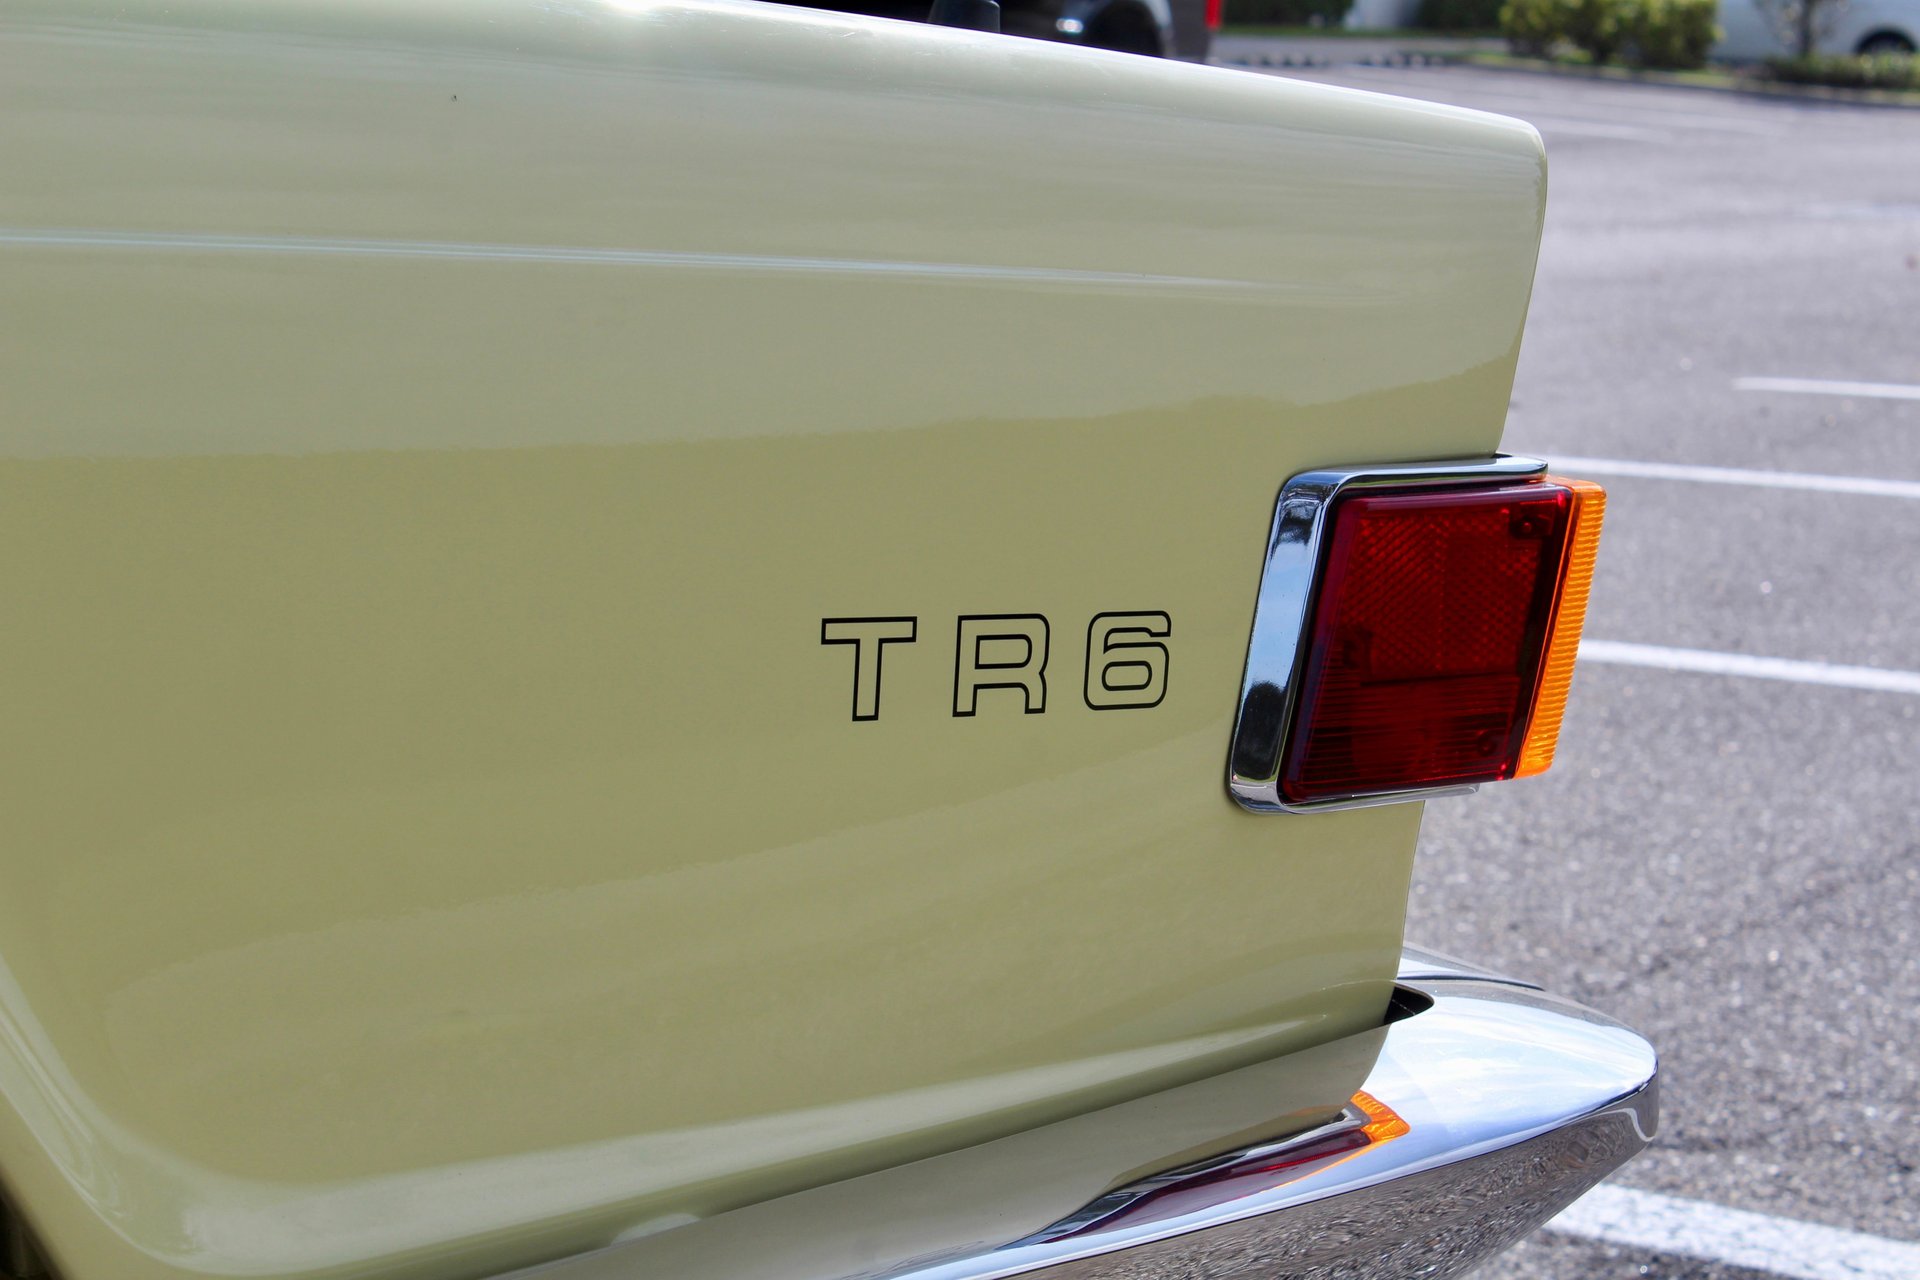 For Sale 1971 Triumph TR6